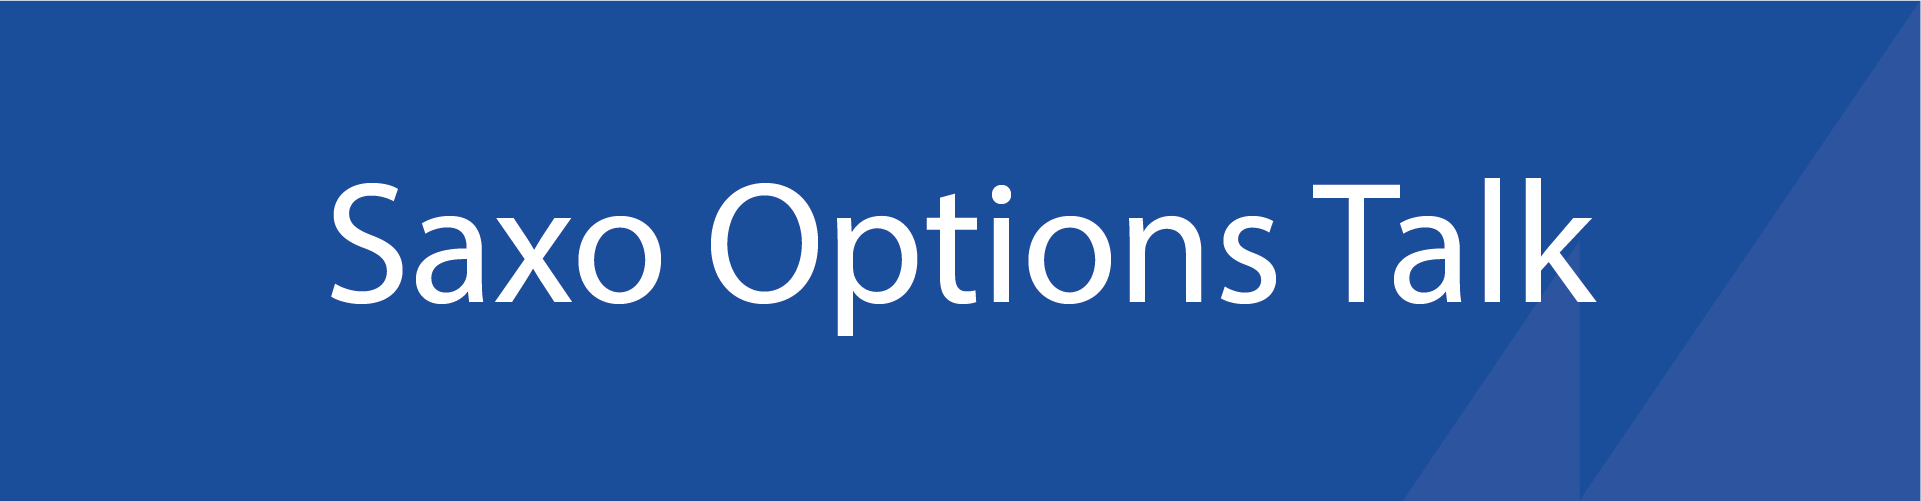 Options Talk